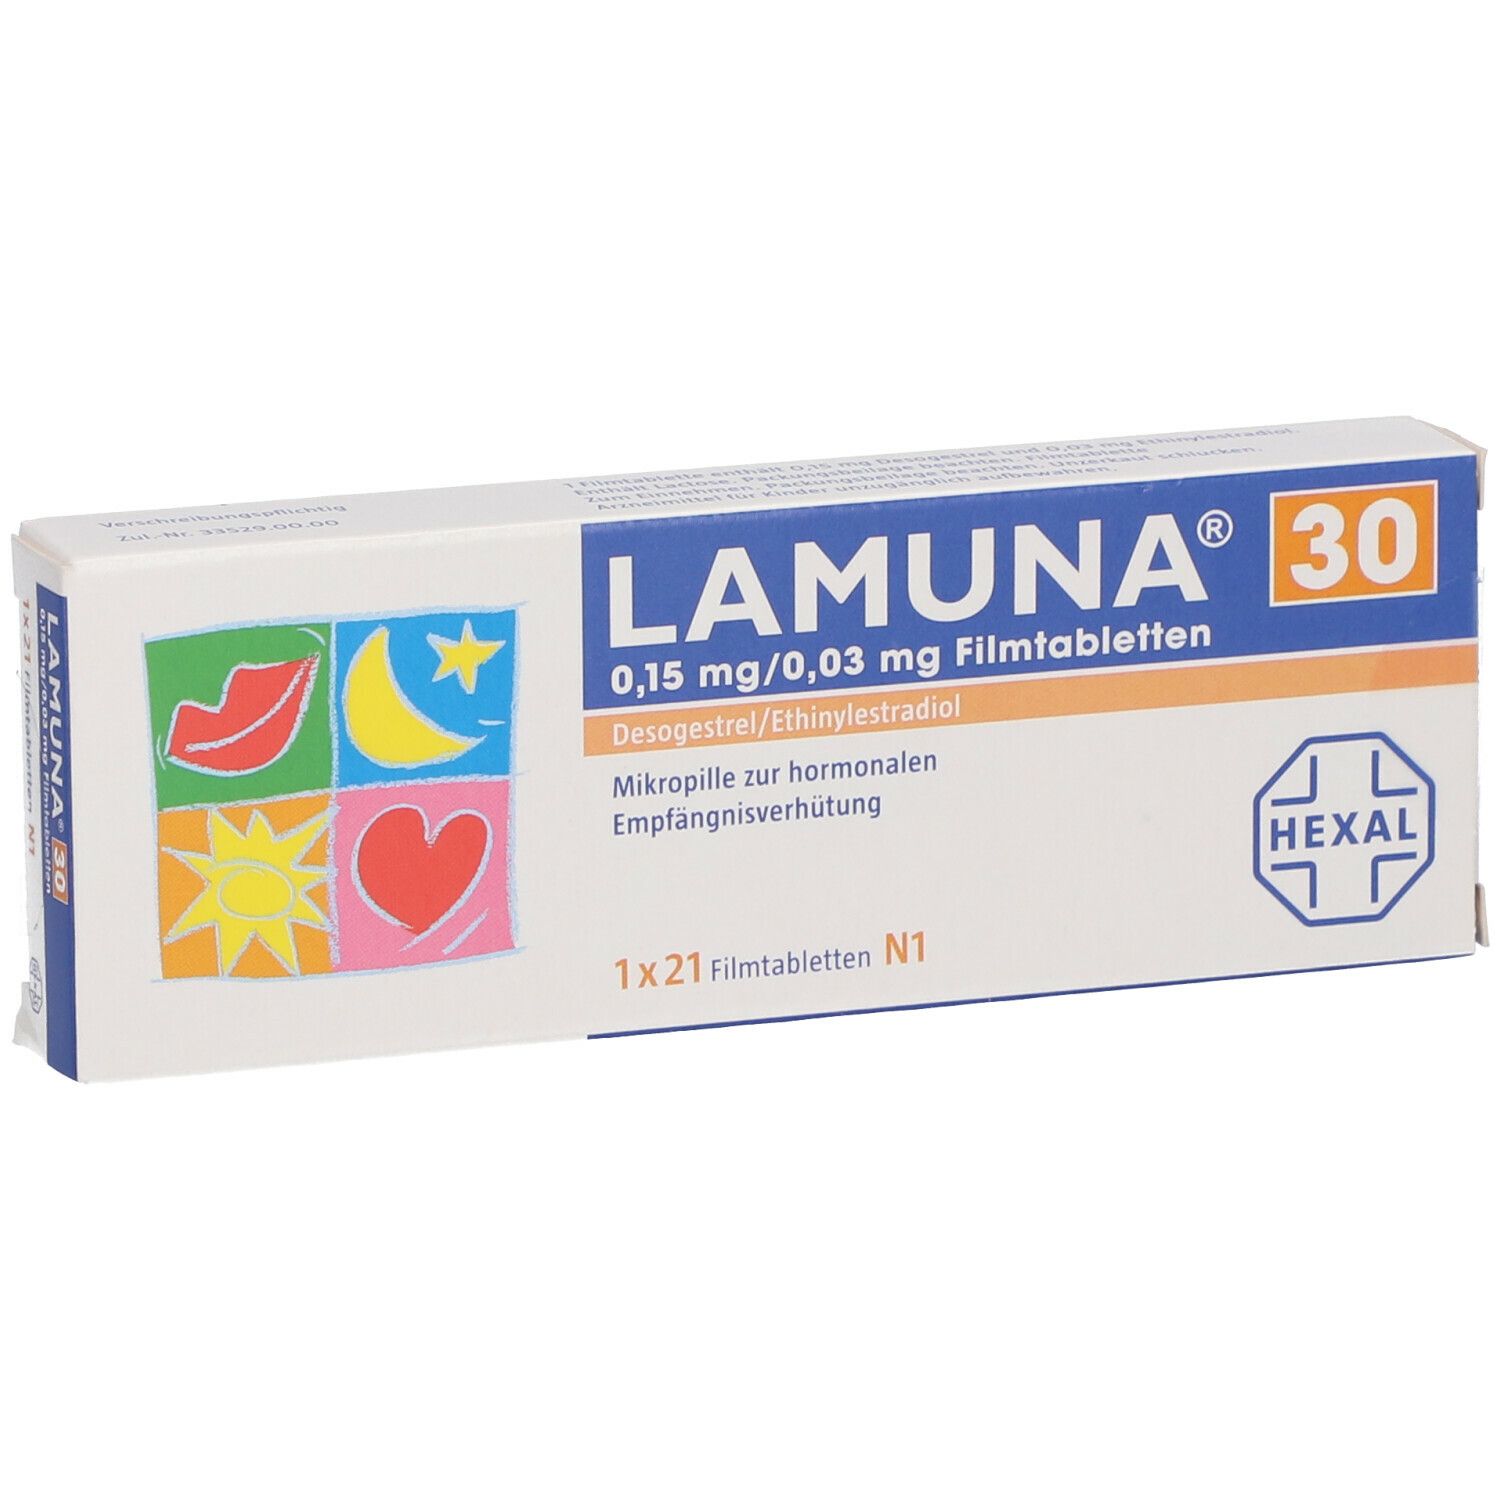 LAMUNA® 30